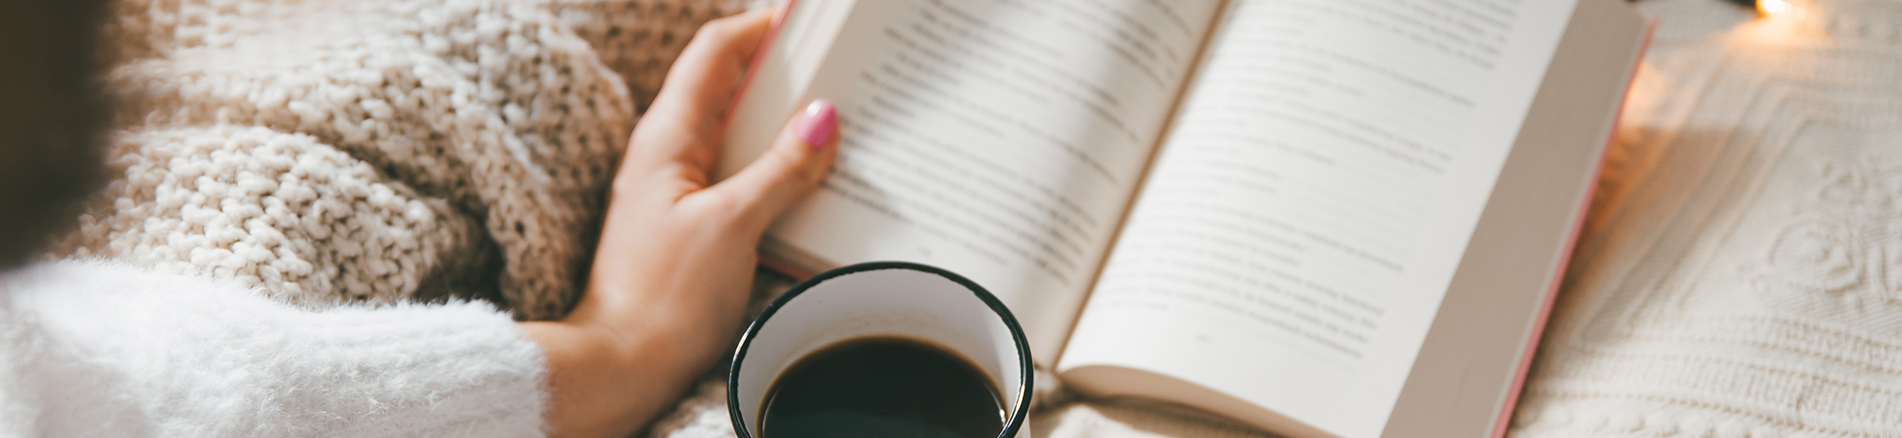 Kuvassa on nainen lukemassa kirjaa ja juomassa mustaa kahvia. Hän on vaalean peiton alla